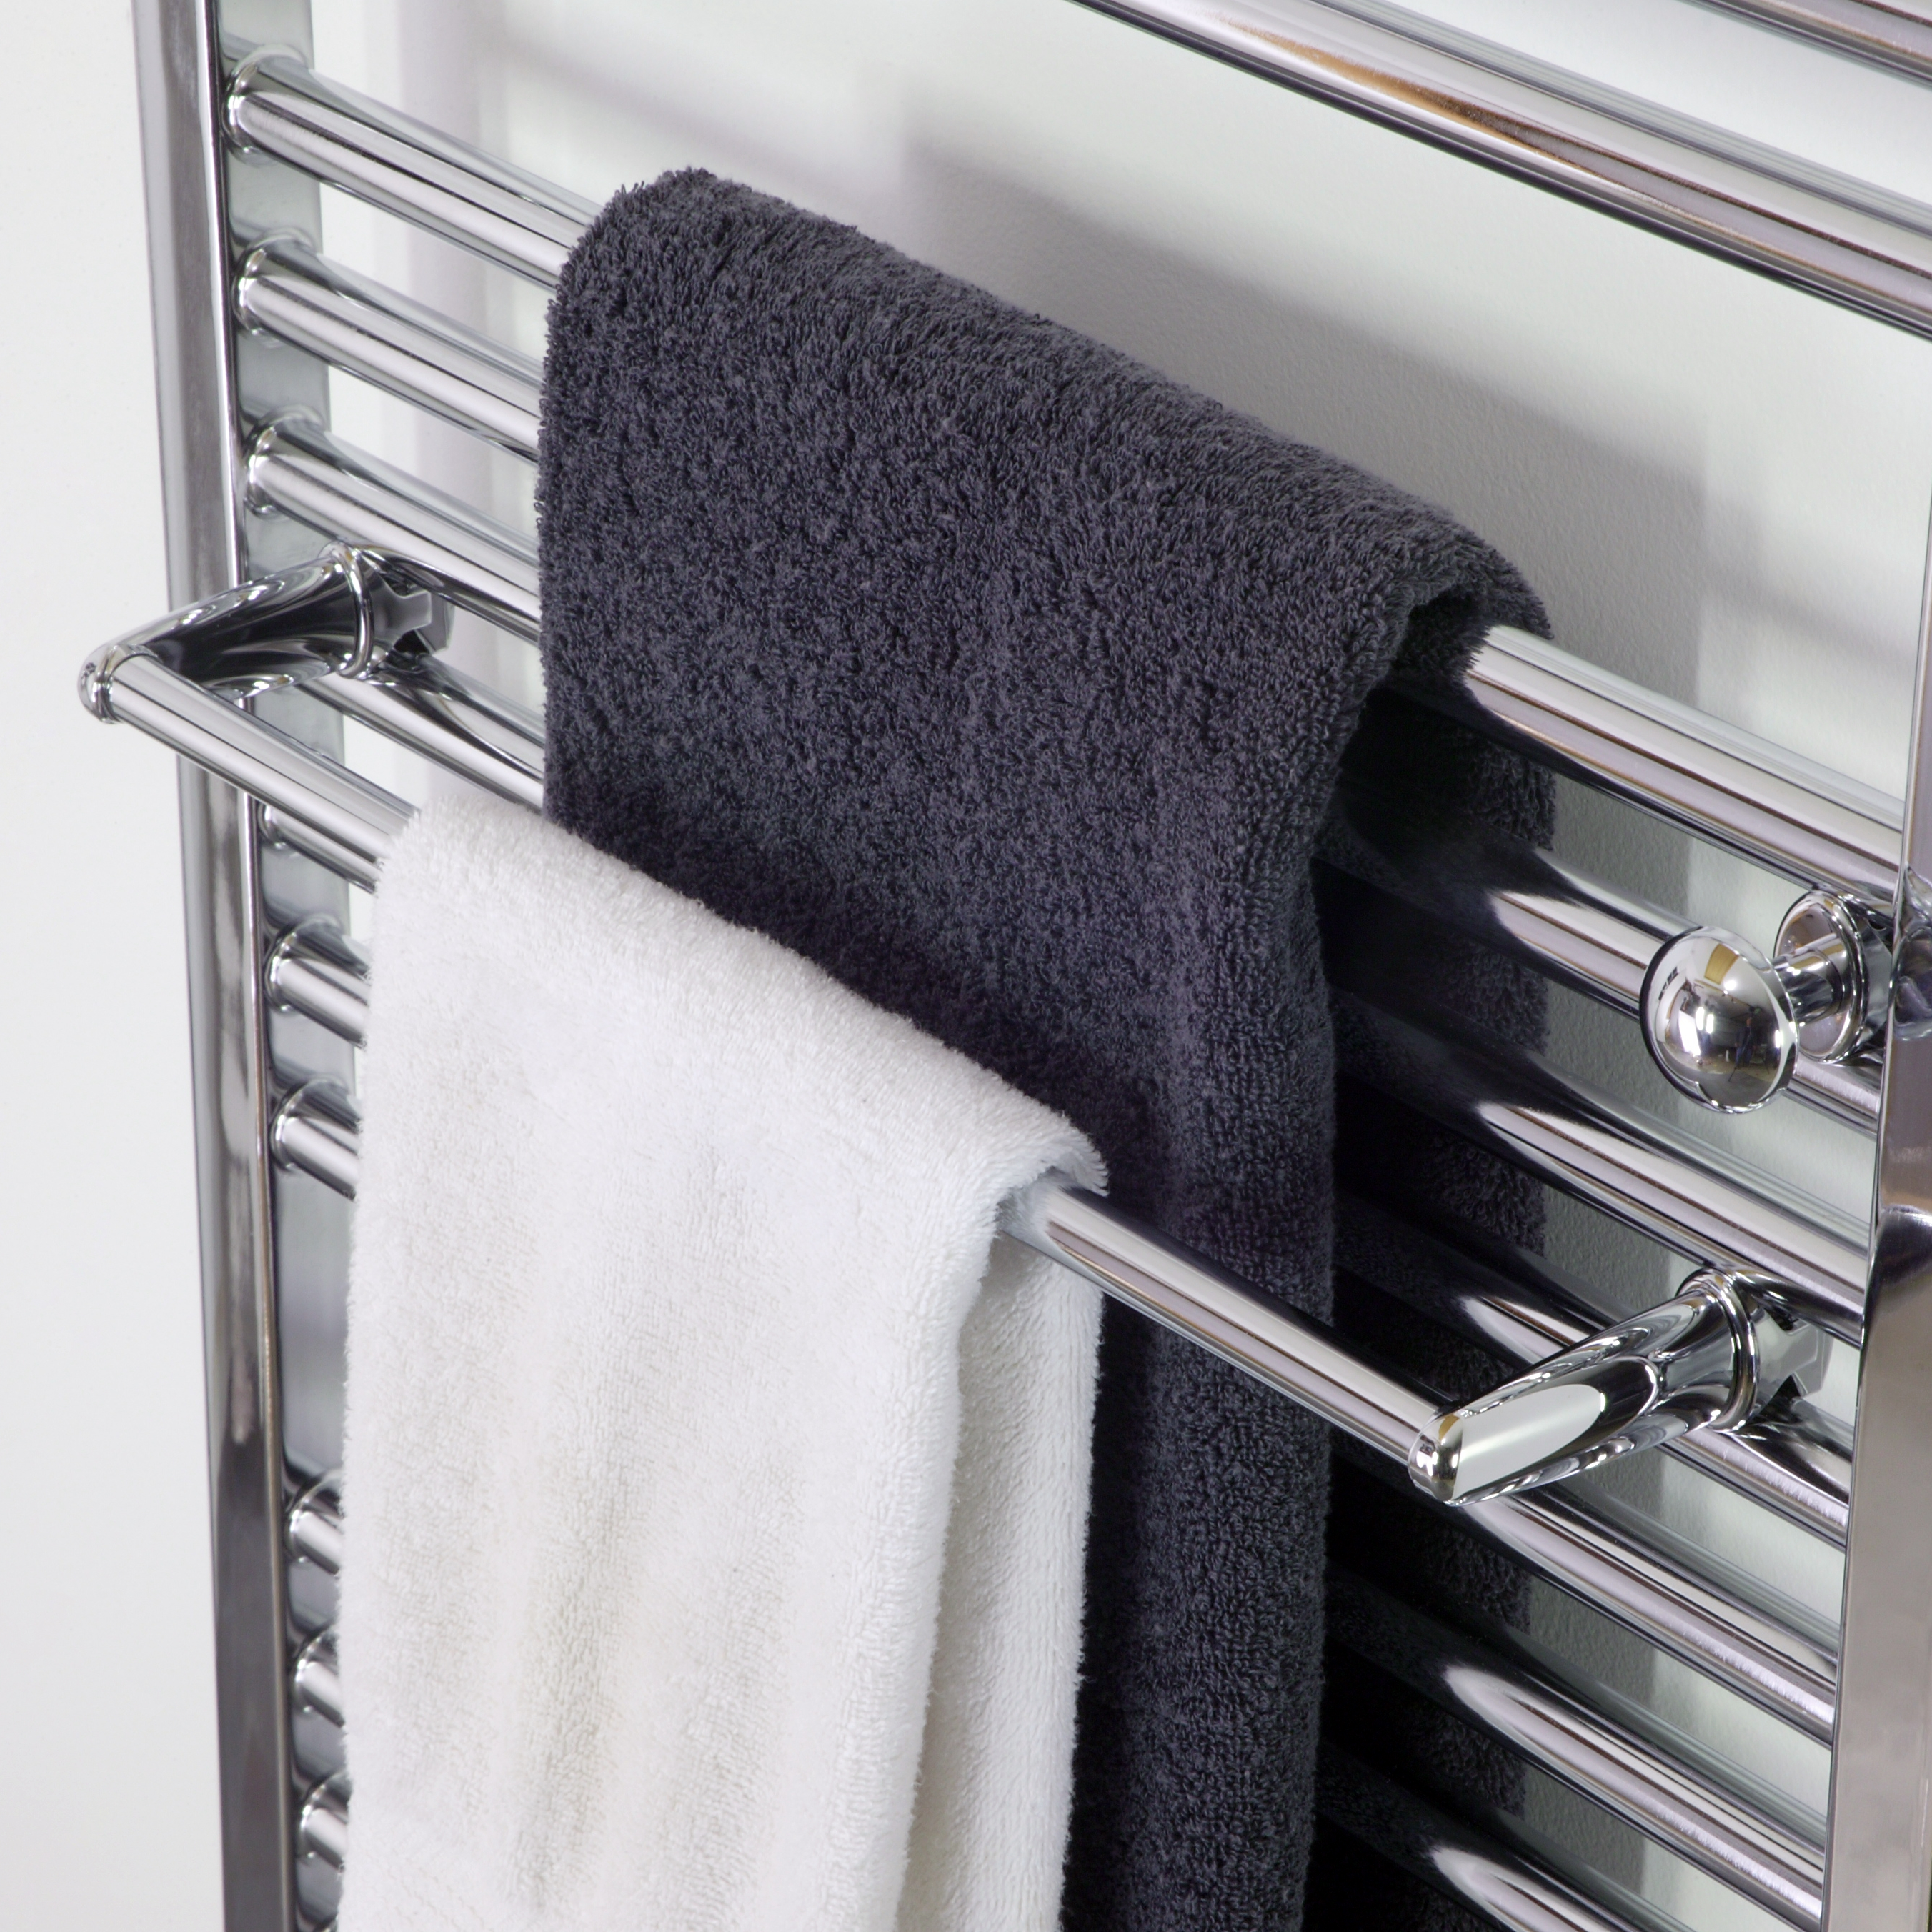 Черные полотенца для ванной. Сушилка Towel Warmer. Towel Rack сушилка для белья. Полотенцесушитель Towel Dryer -p-352-500. Полотенцесушитель Towel Rack r116.